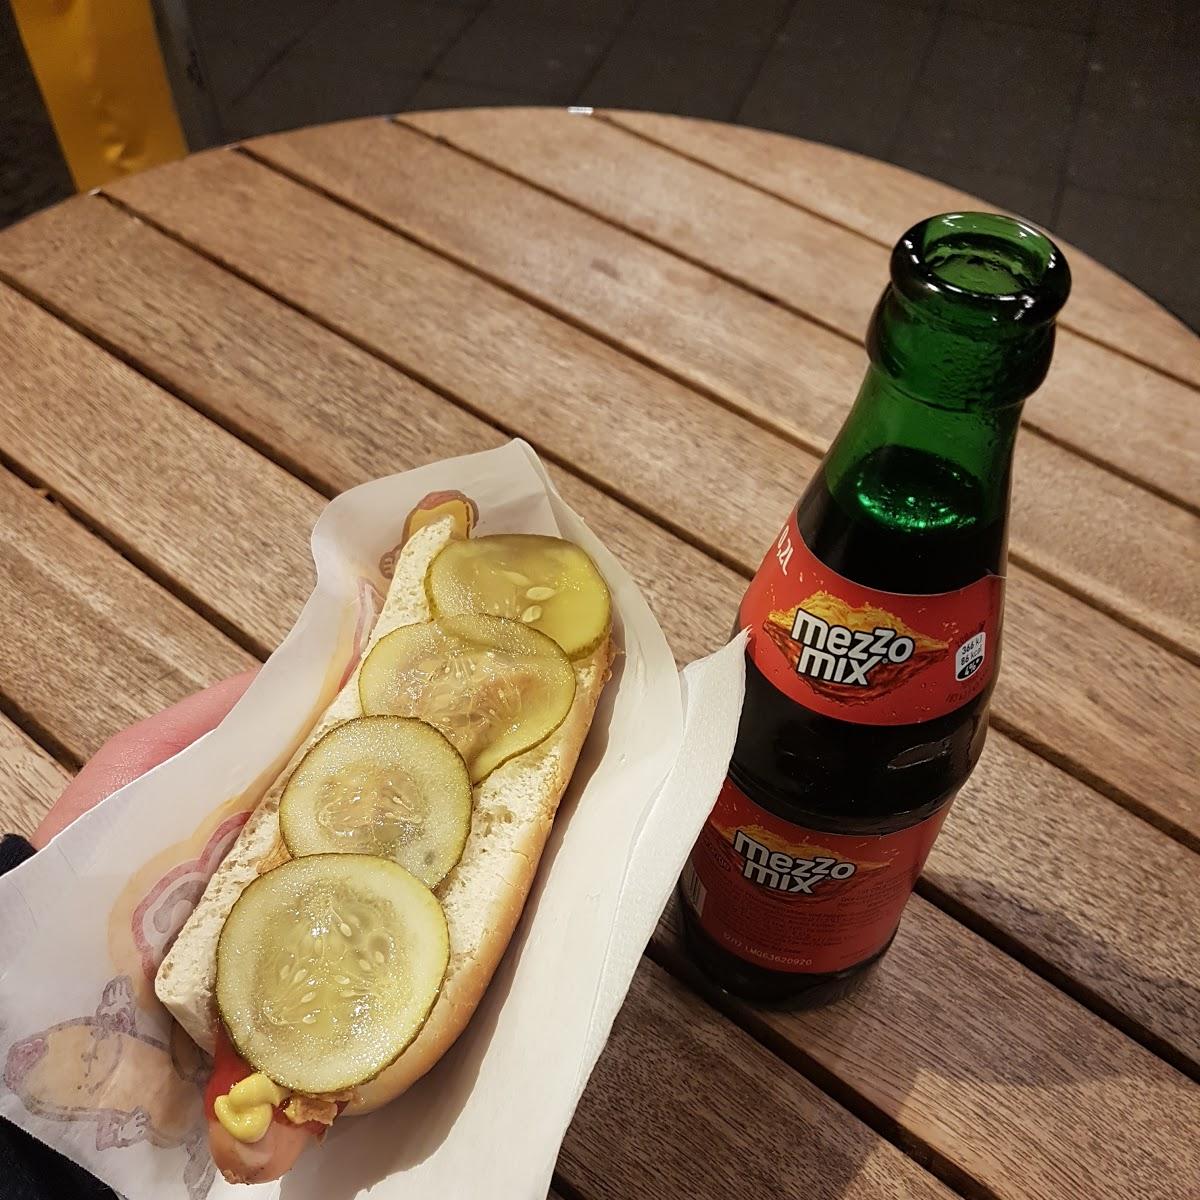 Restaurant "fresh´n fast hot dog" in Berlin